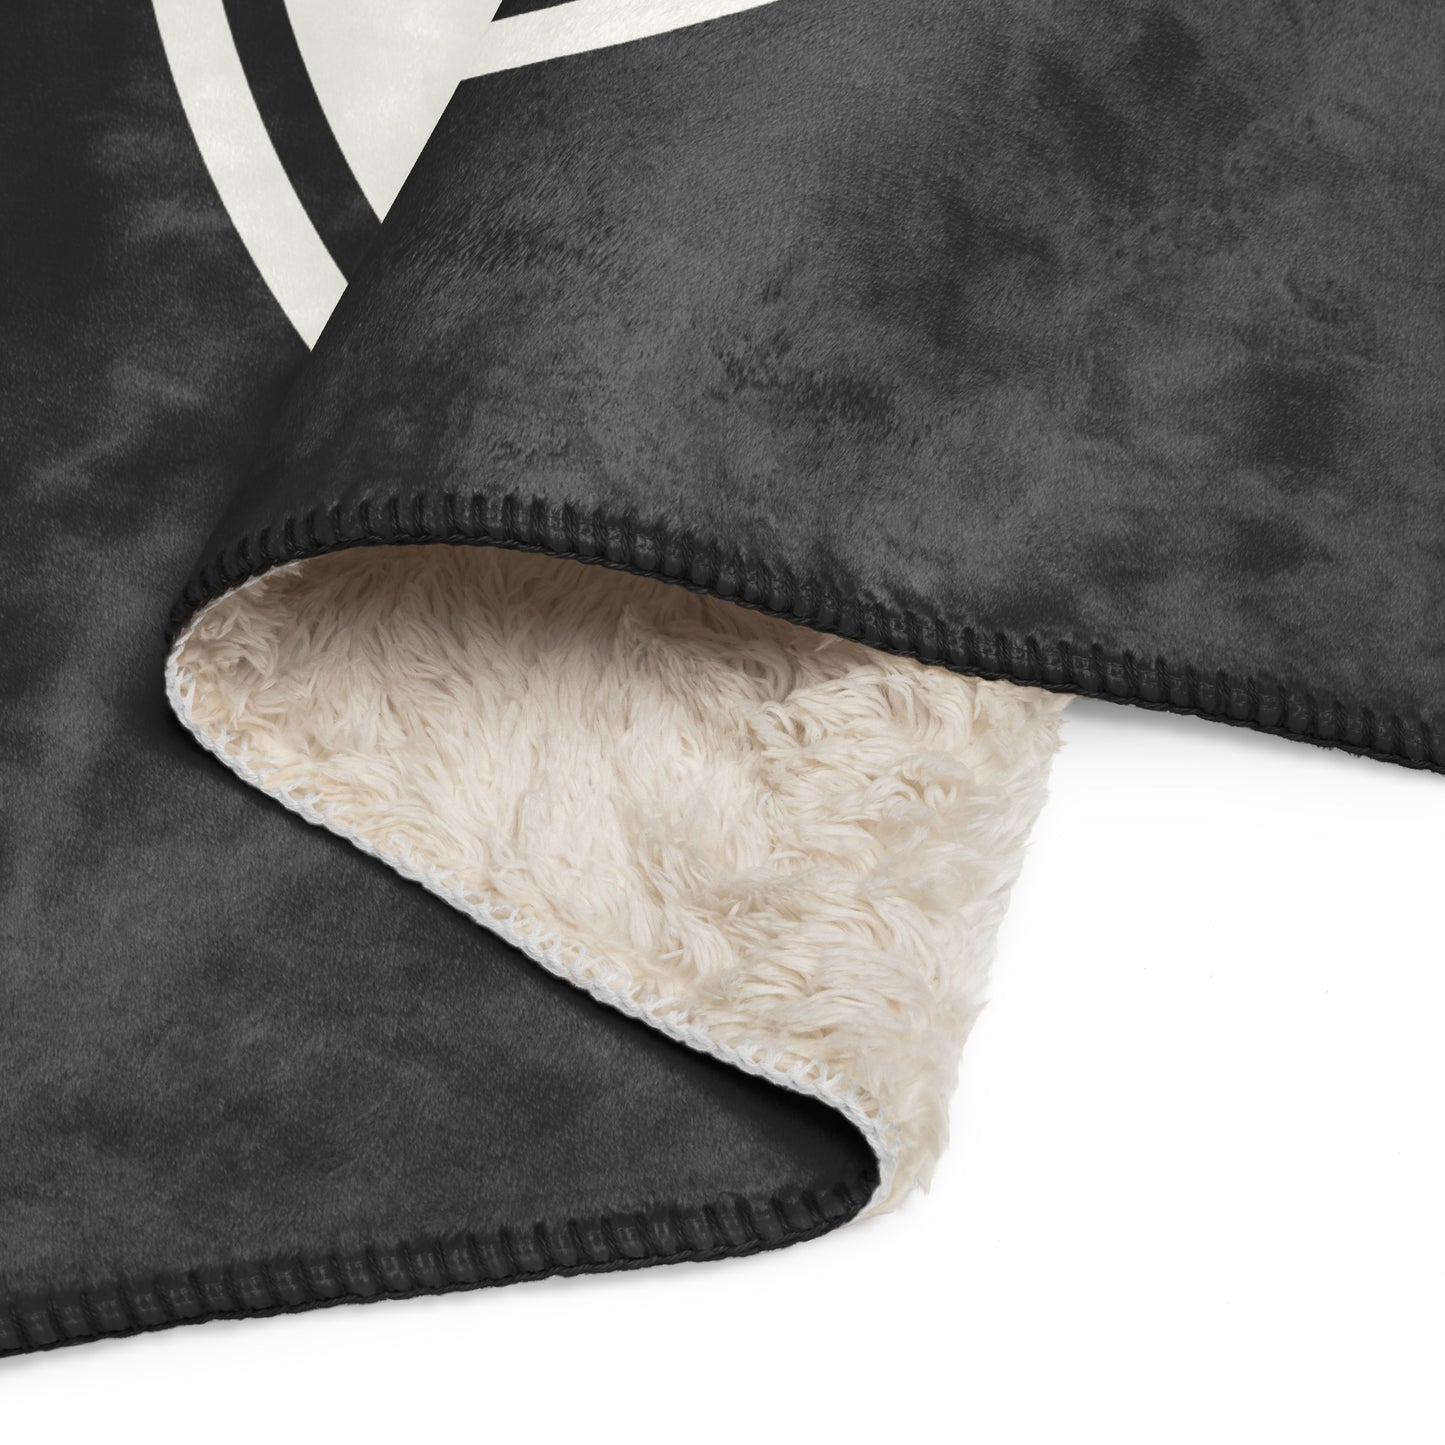 Unique Travel Gift Sherpa Blanket - White Oval • FRA Frankfurt • YHM Designs - Image 08